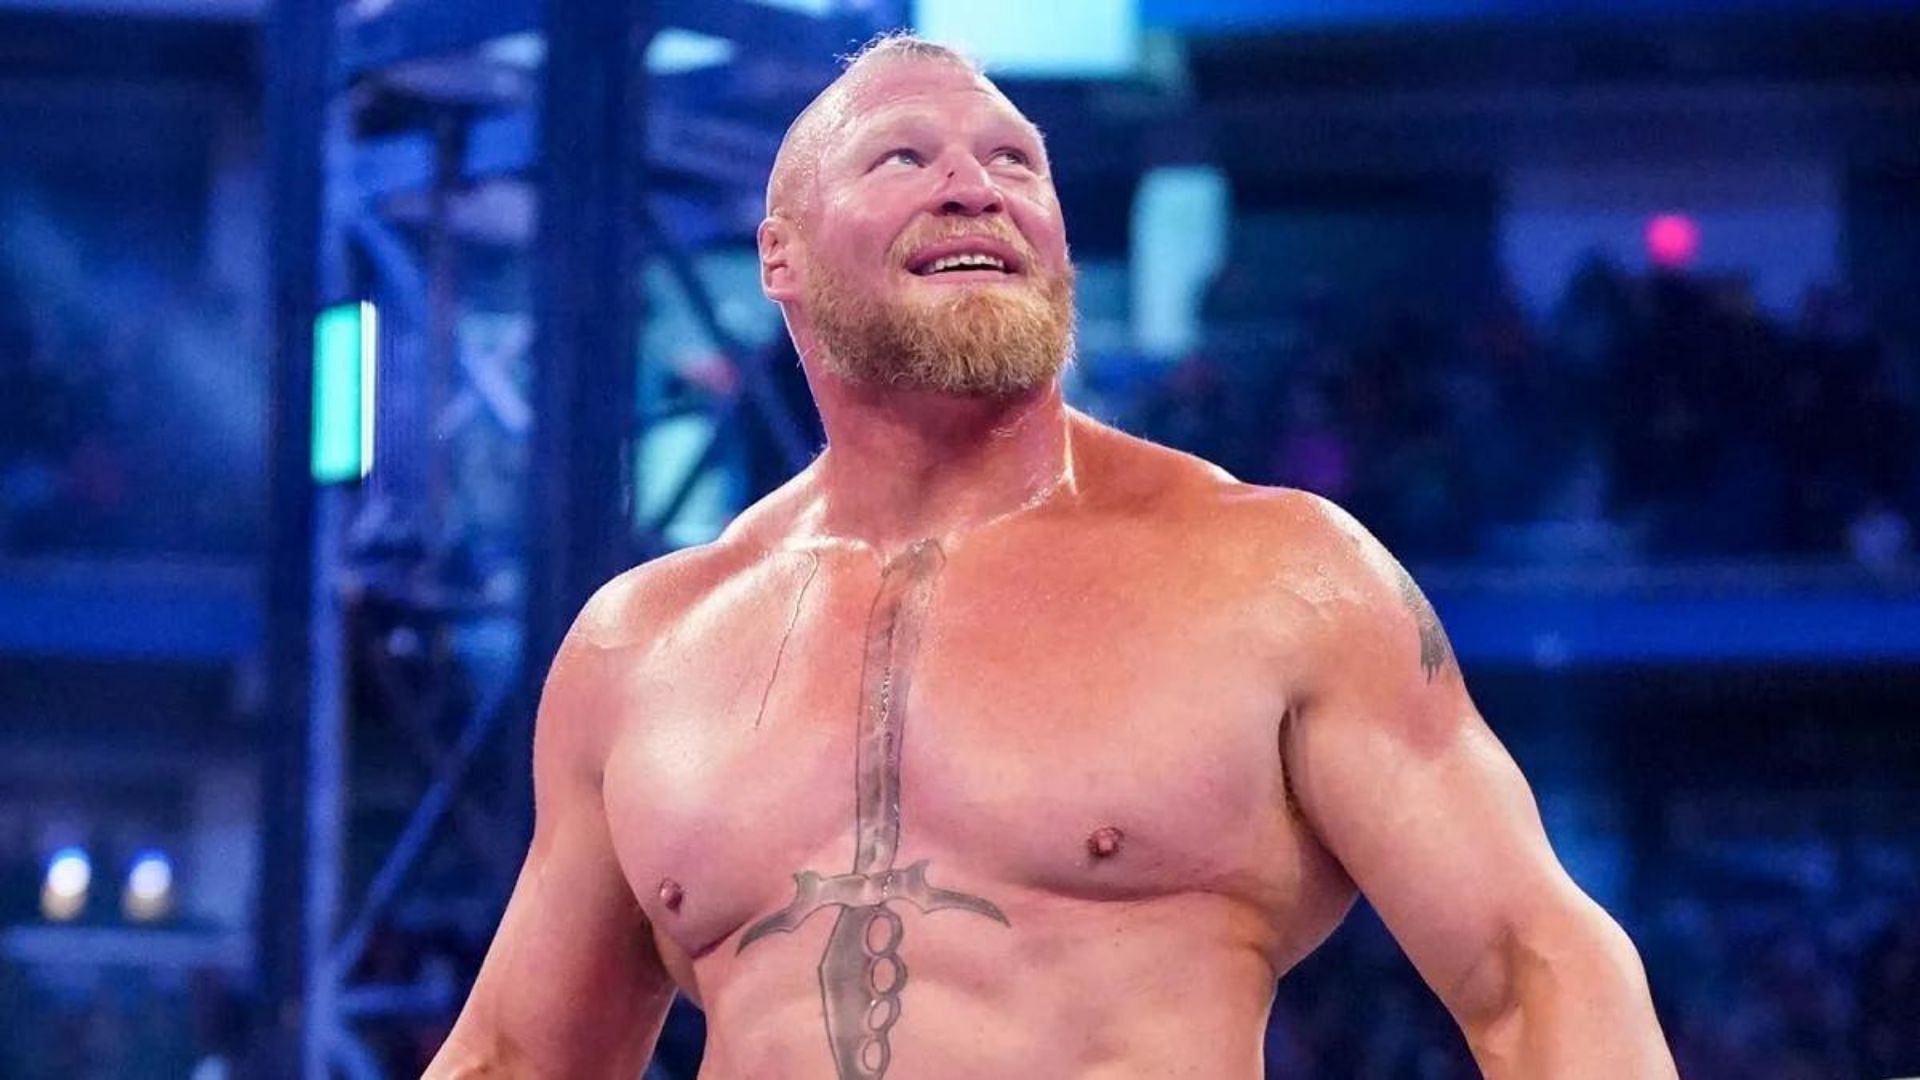 WWE Superstar and former title-holder Brock Lesnar